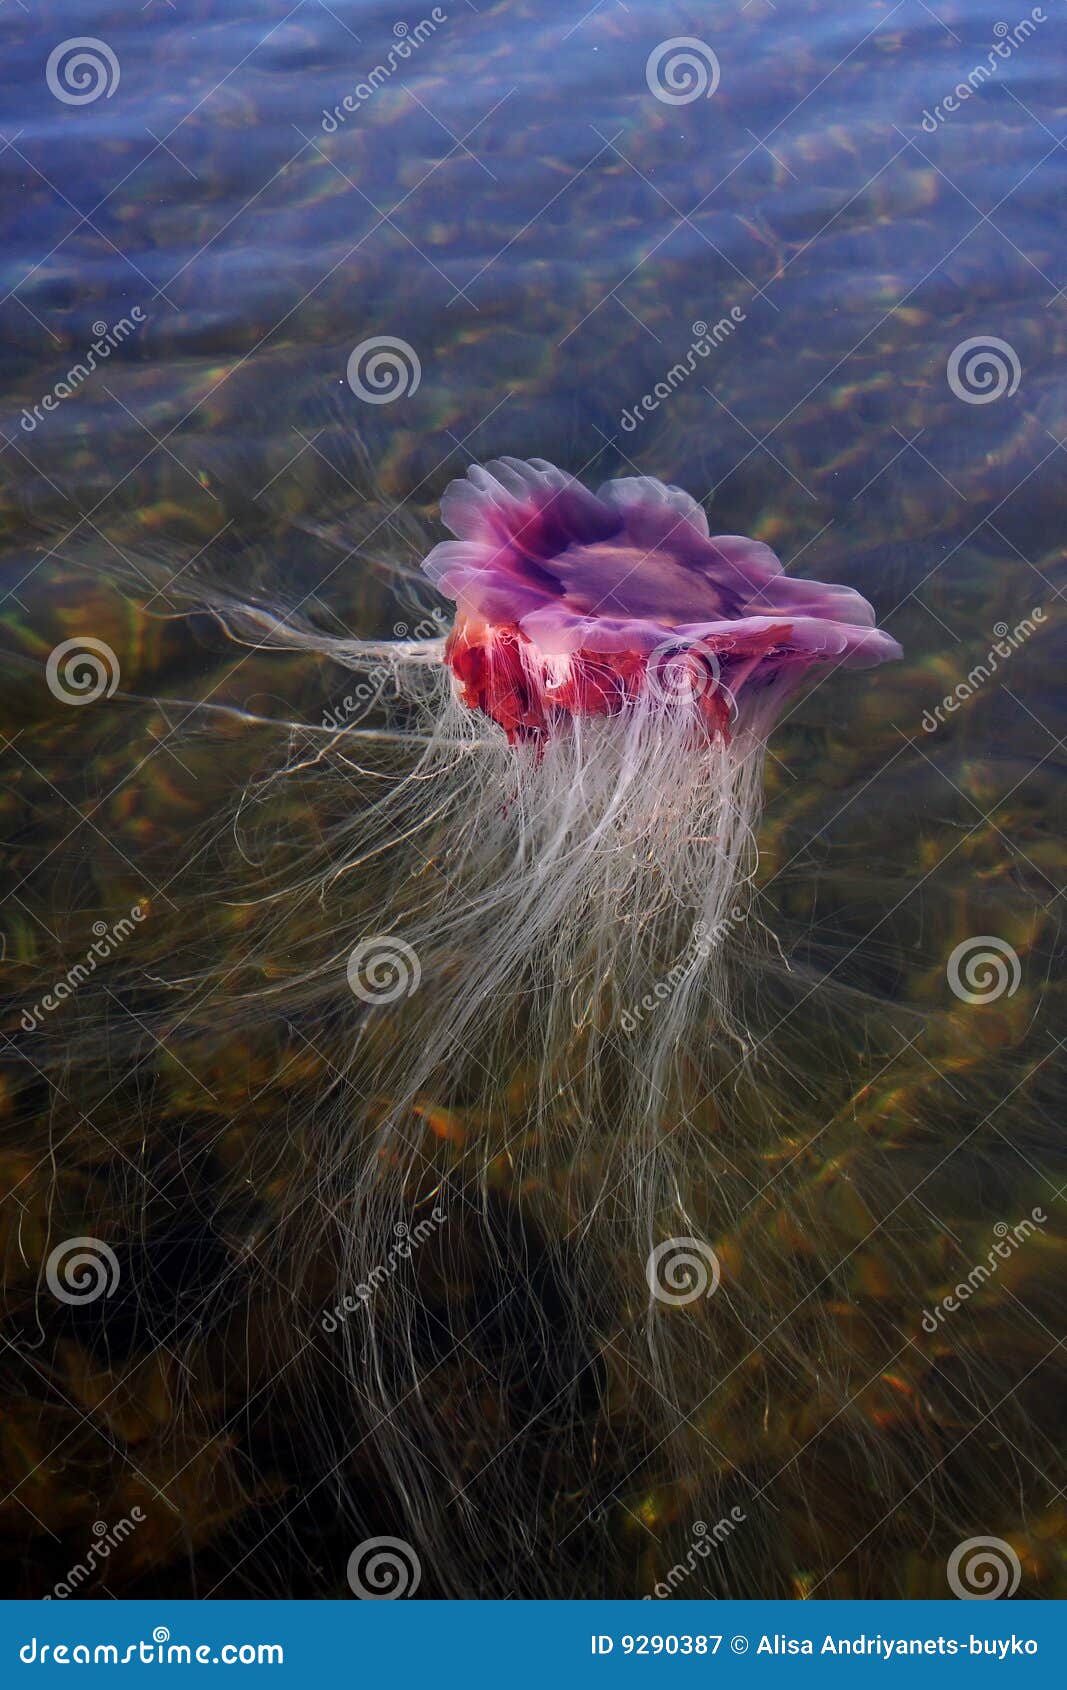 medusa, jellyfish